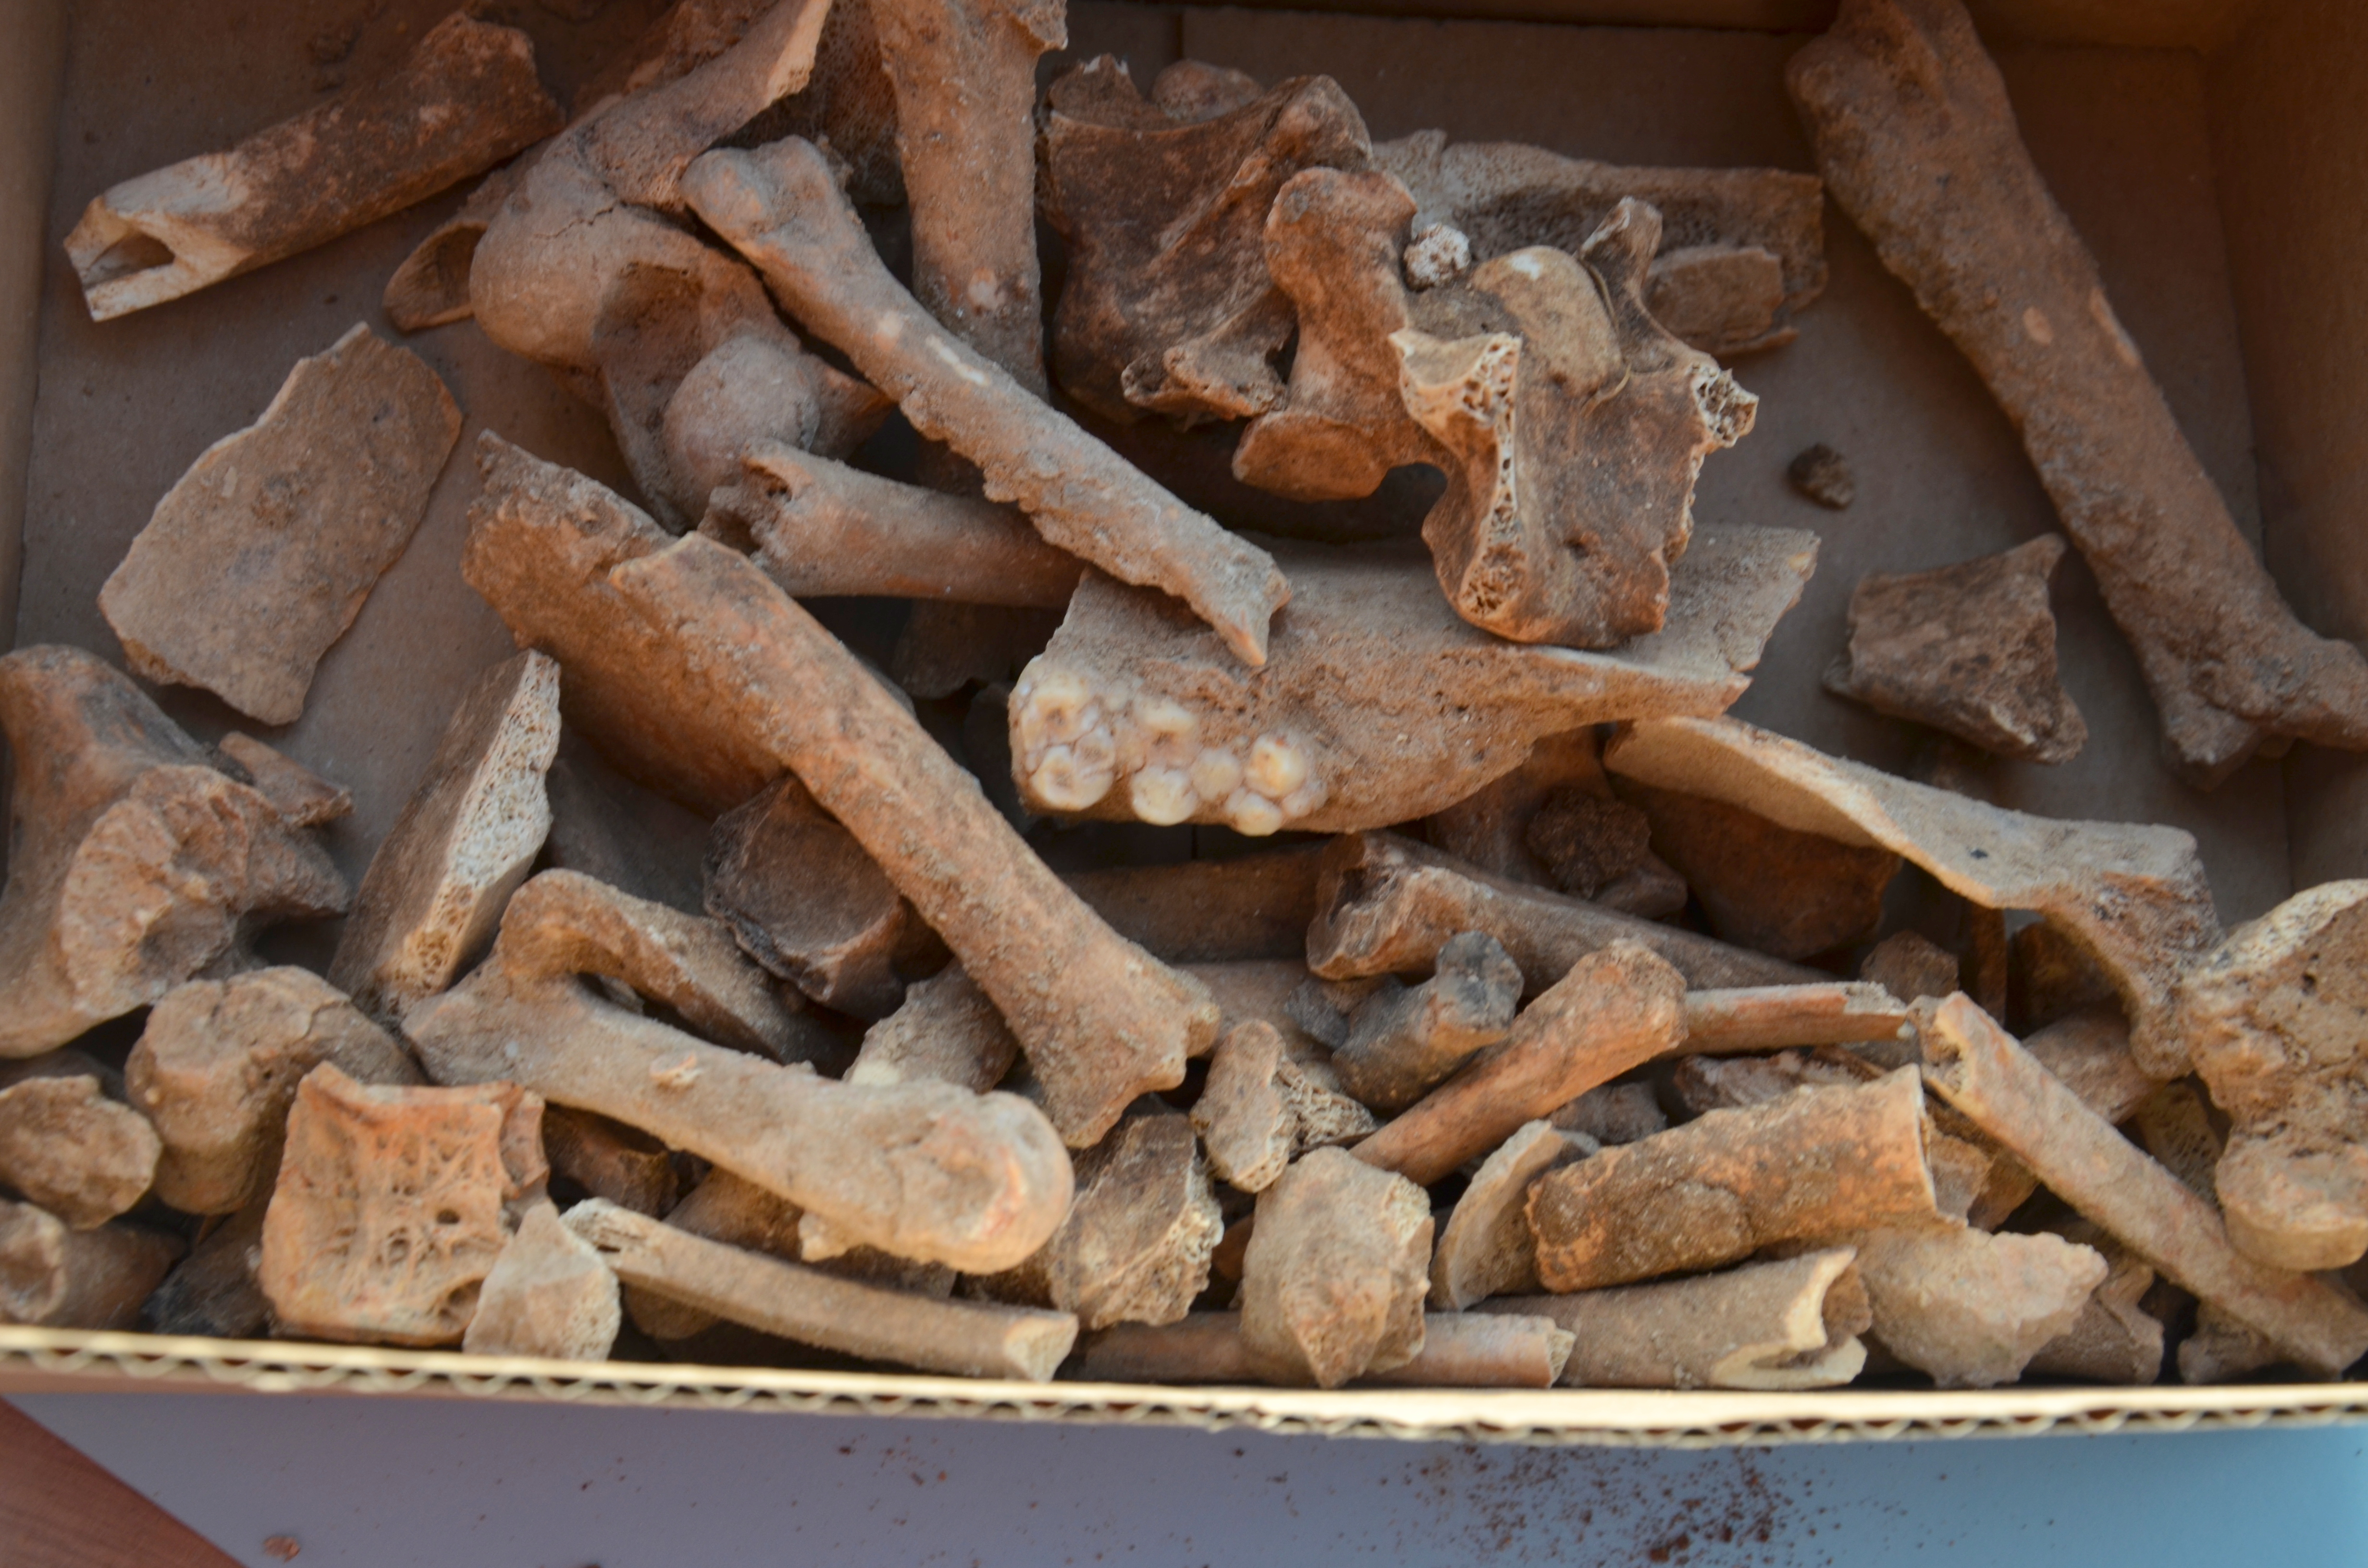 עצמות מלפני כ-5000 שנה שנתגלו בחפירה, בניהם חזירי בר, כבשים ועיזים - צילום: יולי שוורץ